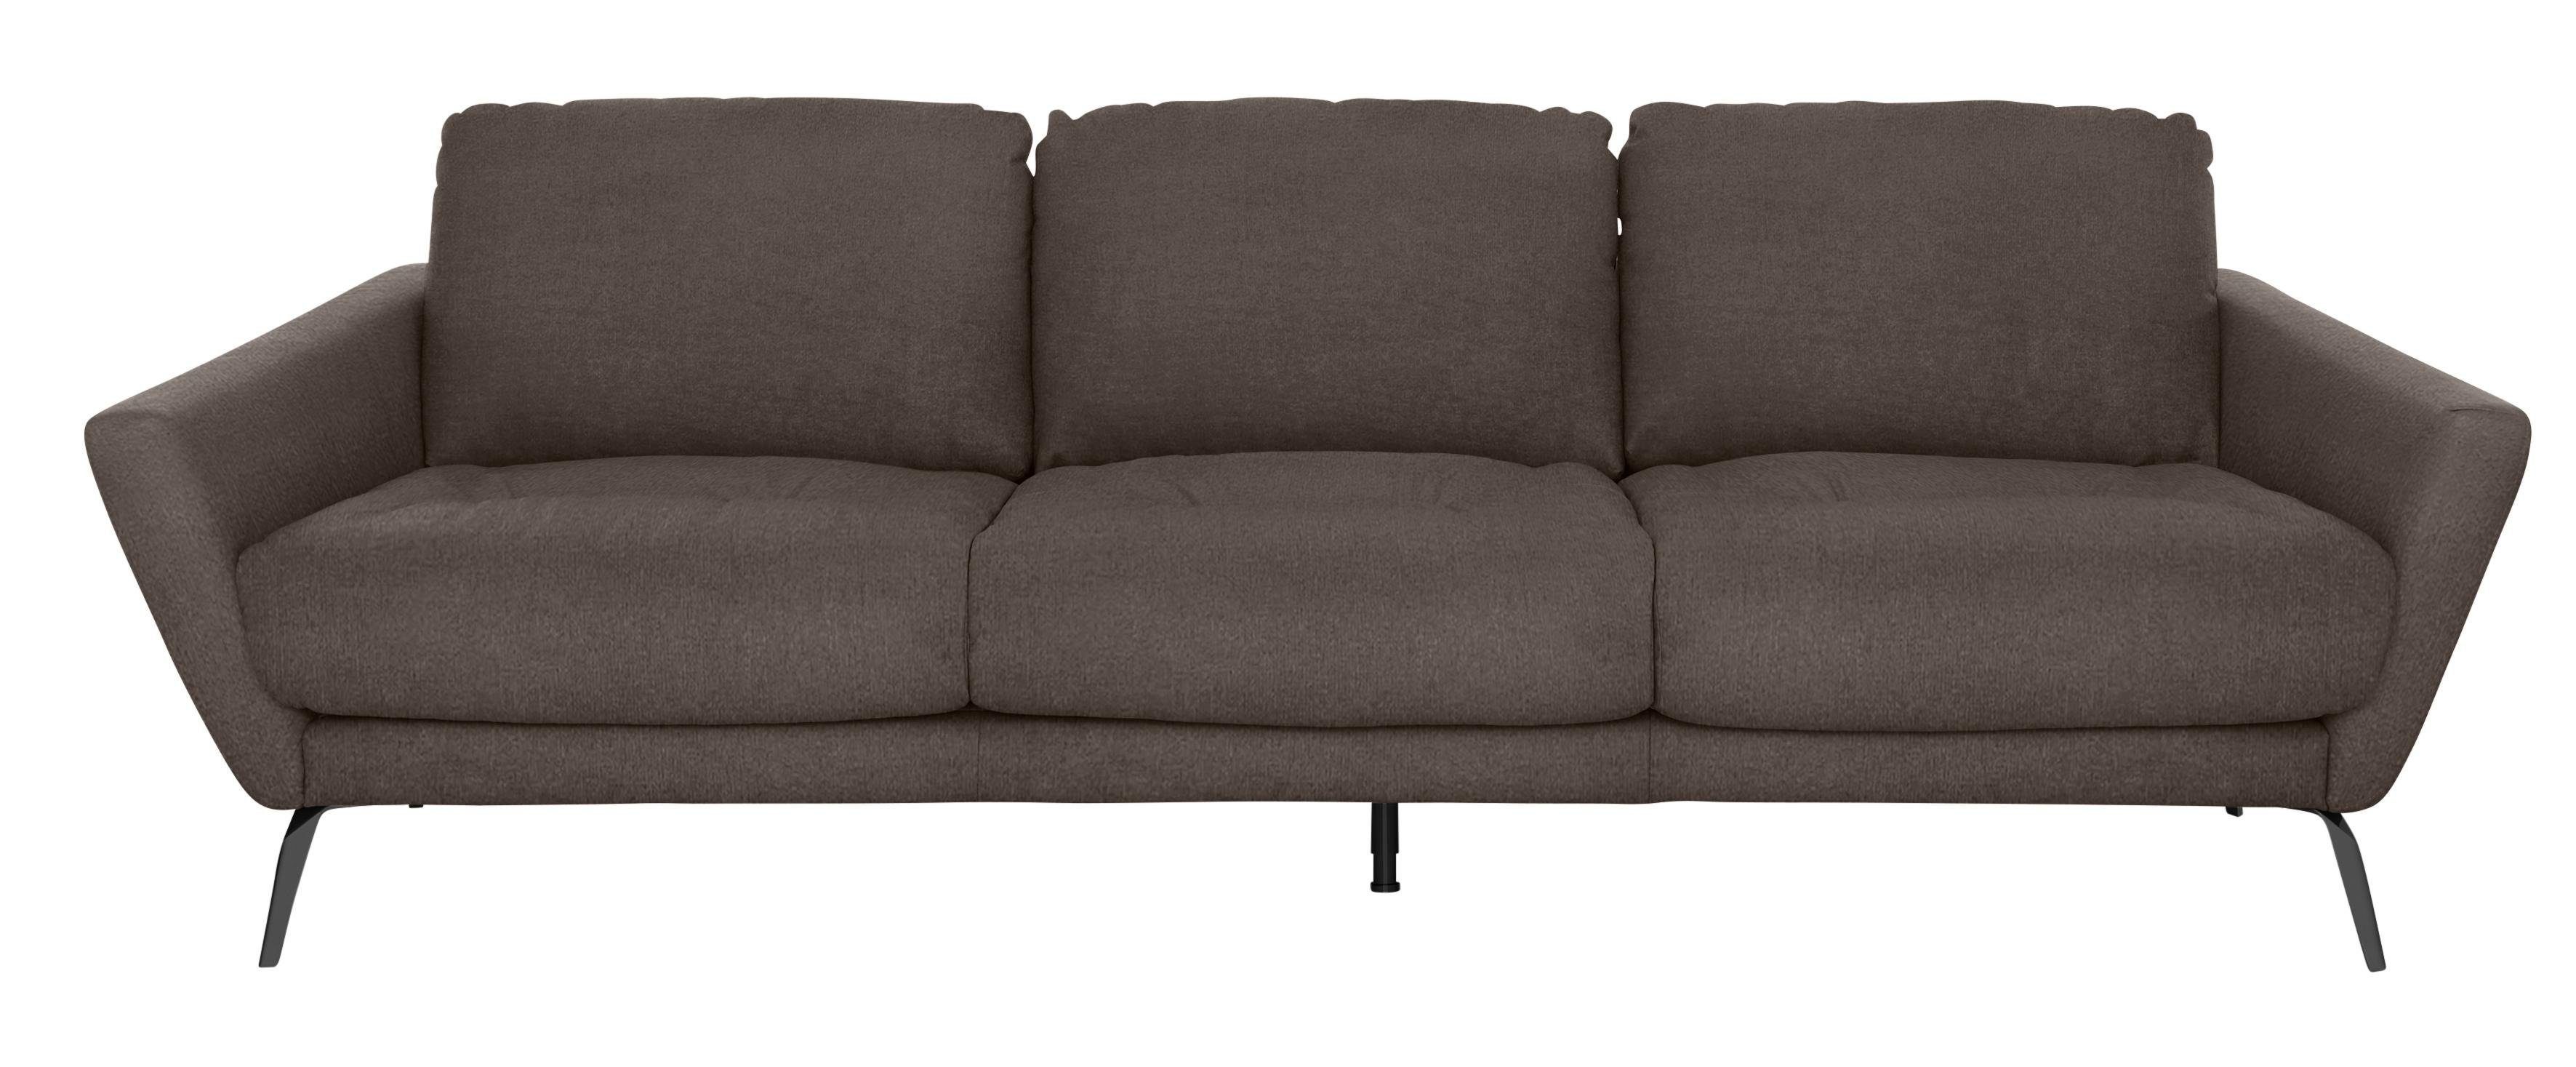 Big-Sofa mit Füße pulverbeschichtet softy, schwarz W.SCHILLIG im Sitz, dekorativer Heftung